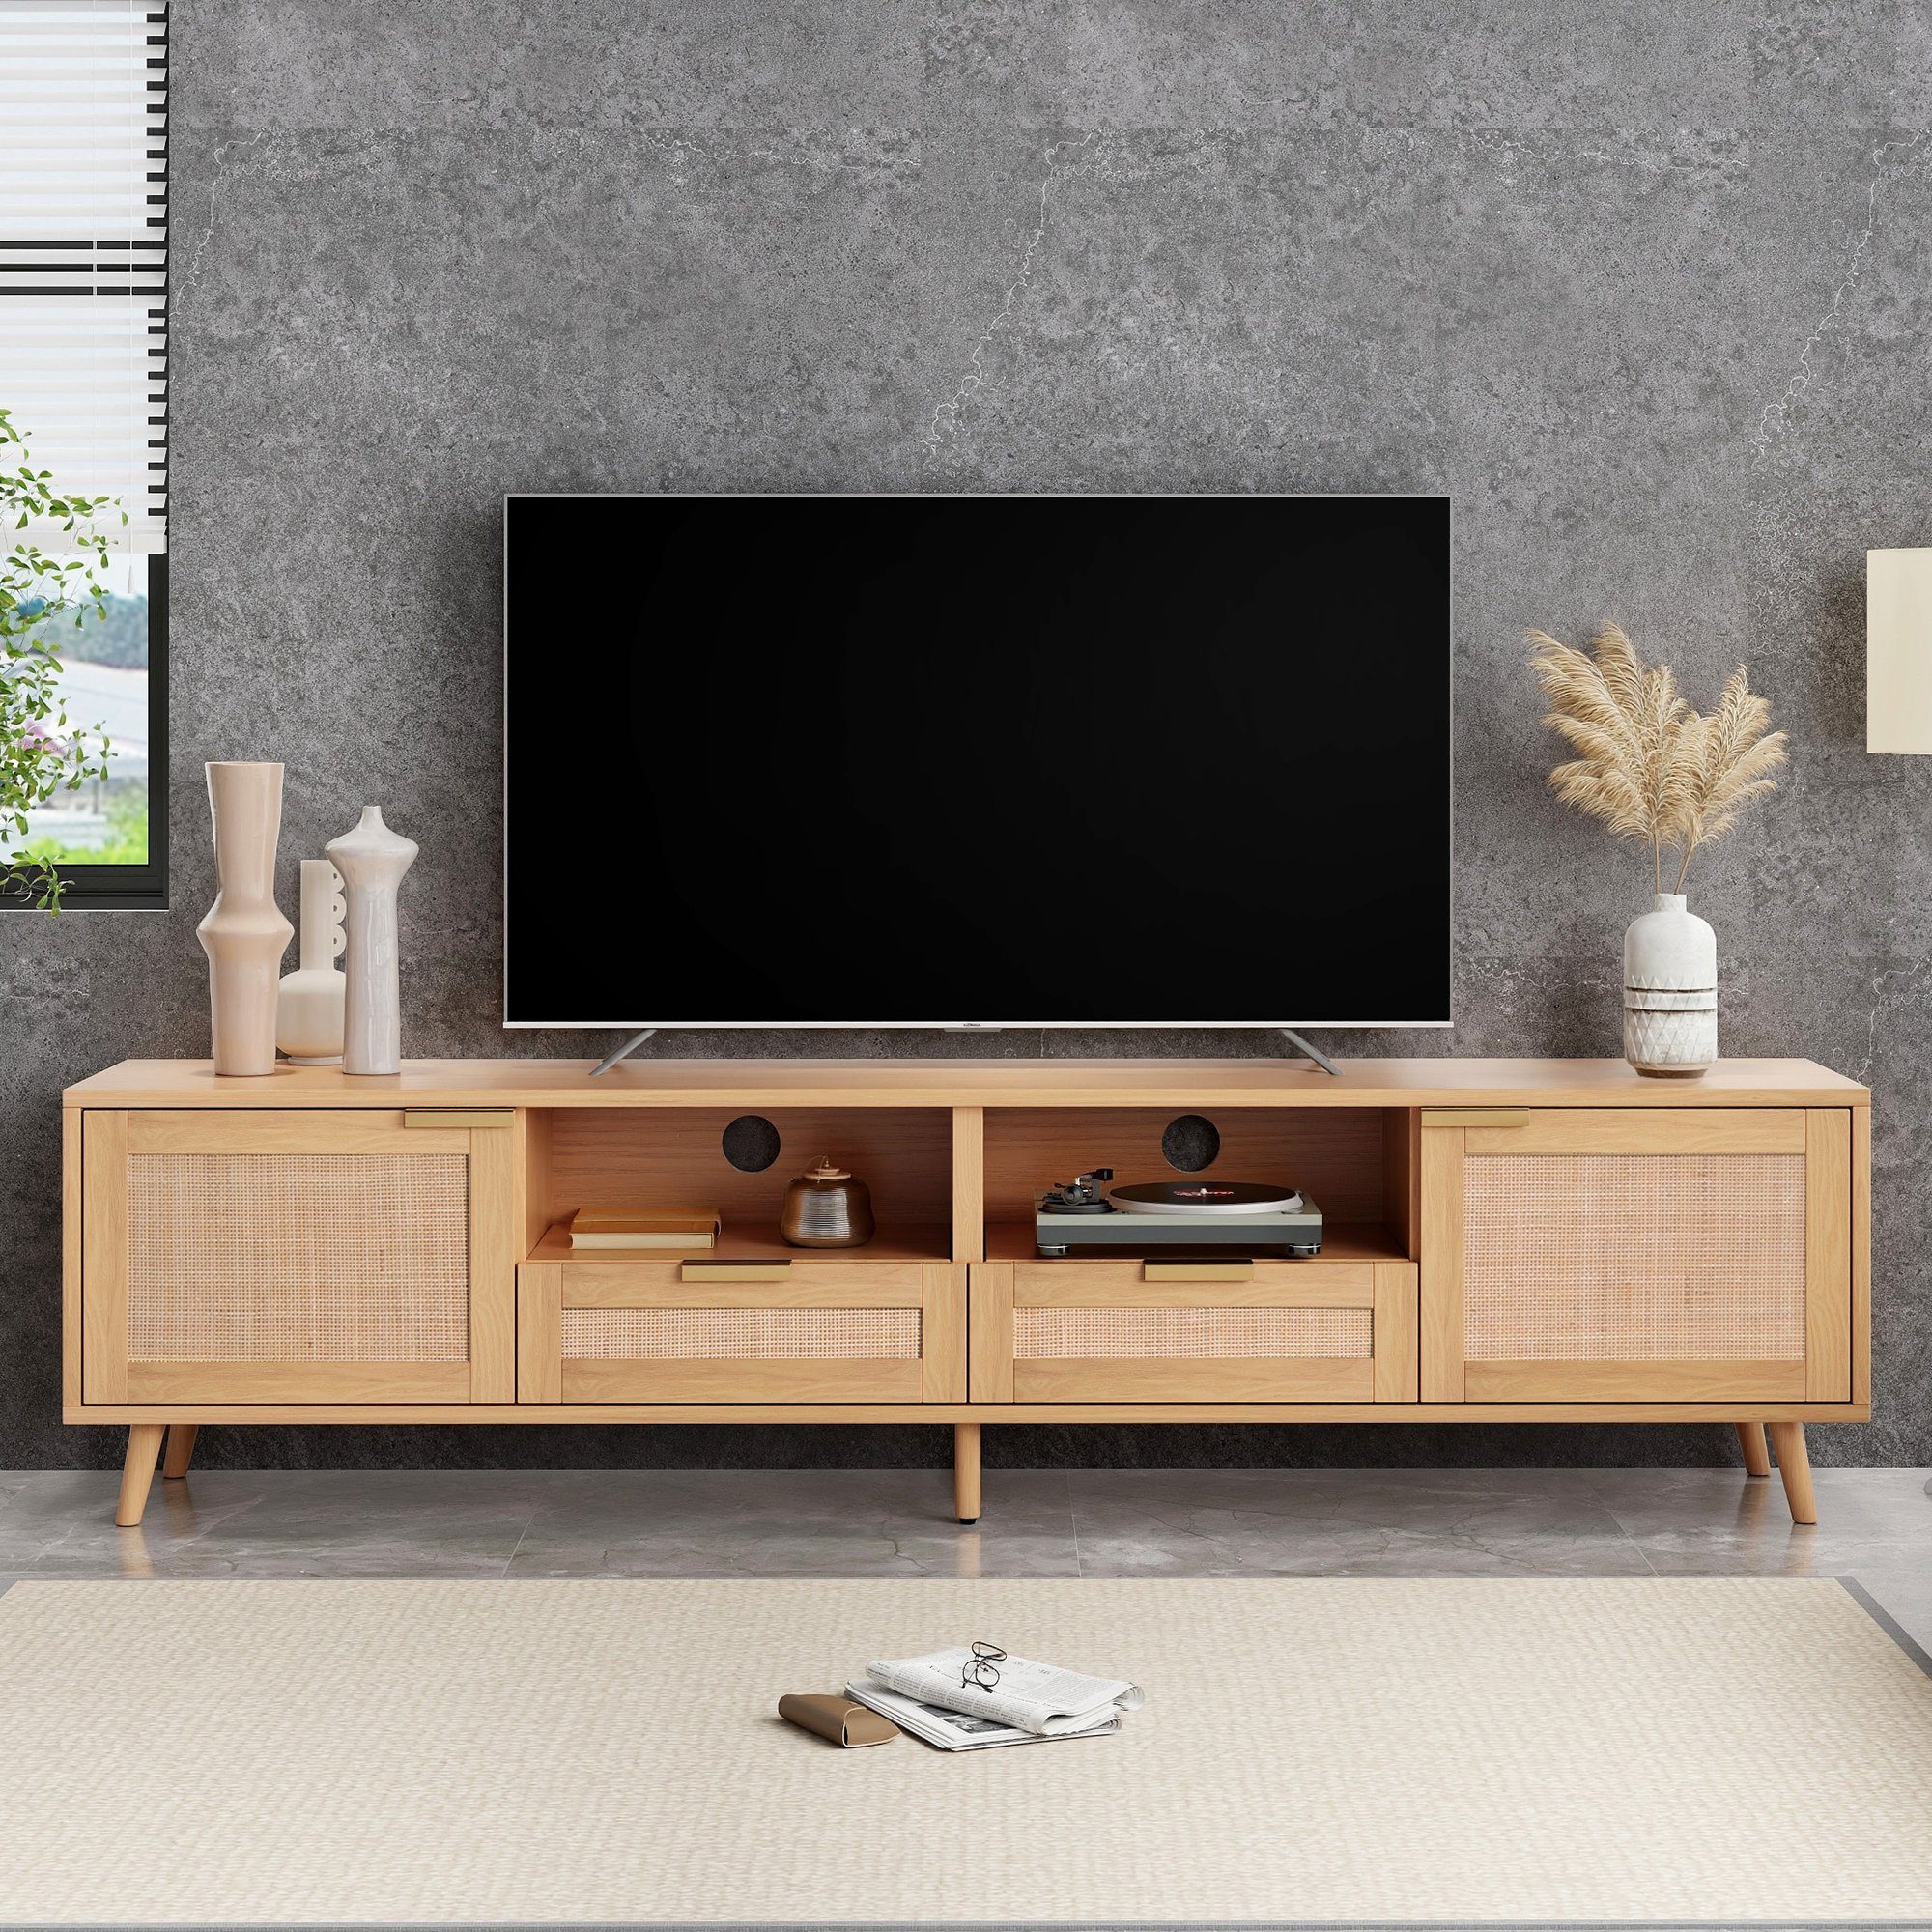 Sweiko TV-Schrank (lowboard, Mit 2 Türen, 2 offenen Fächern, 2 Schubladen) Geflochtenes Rattan-Design, 200*37*49cm